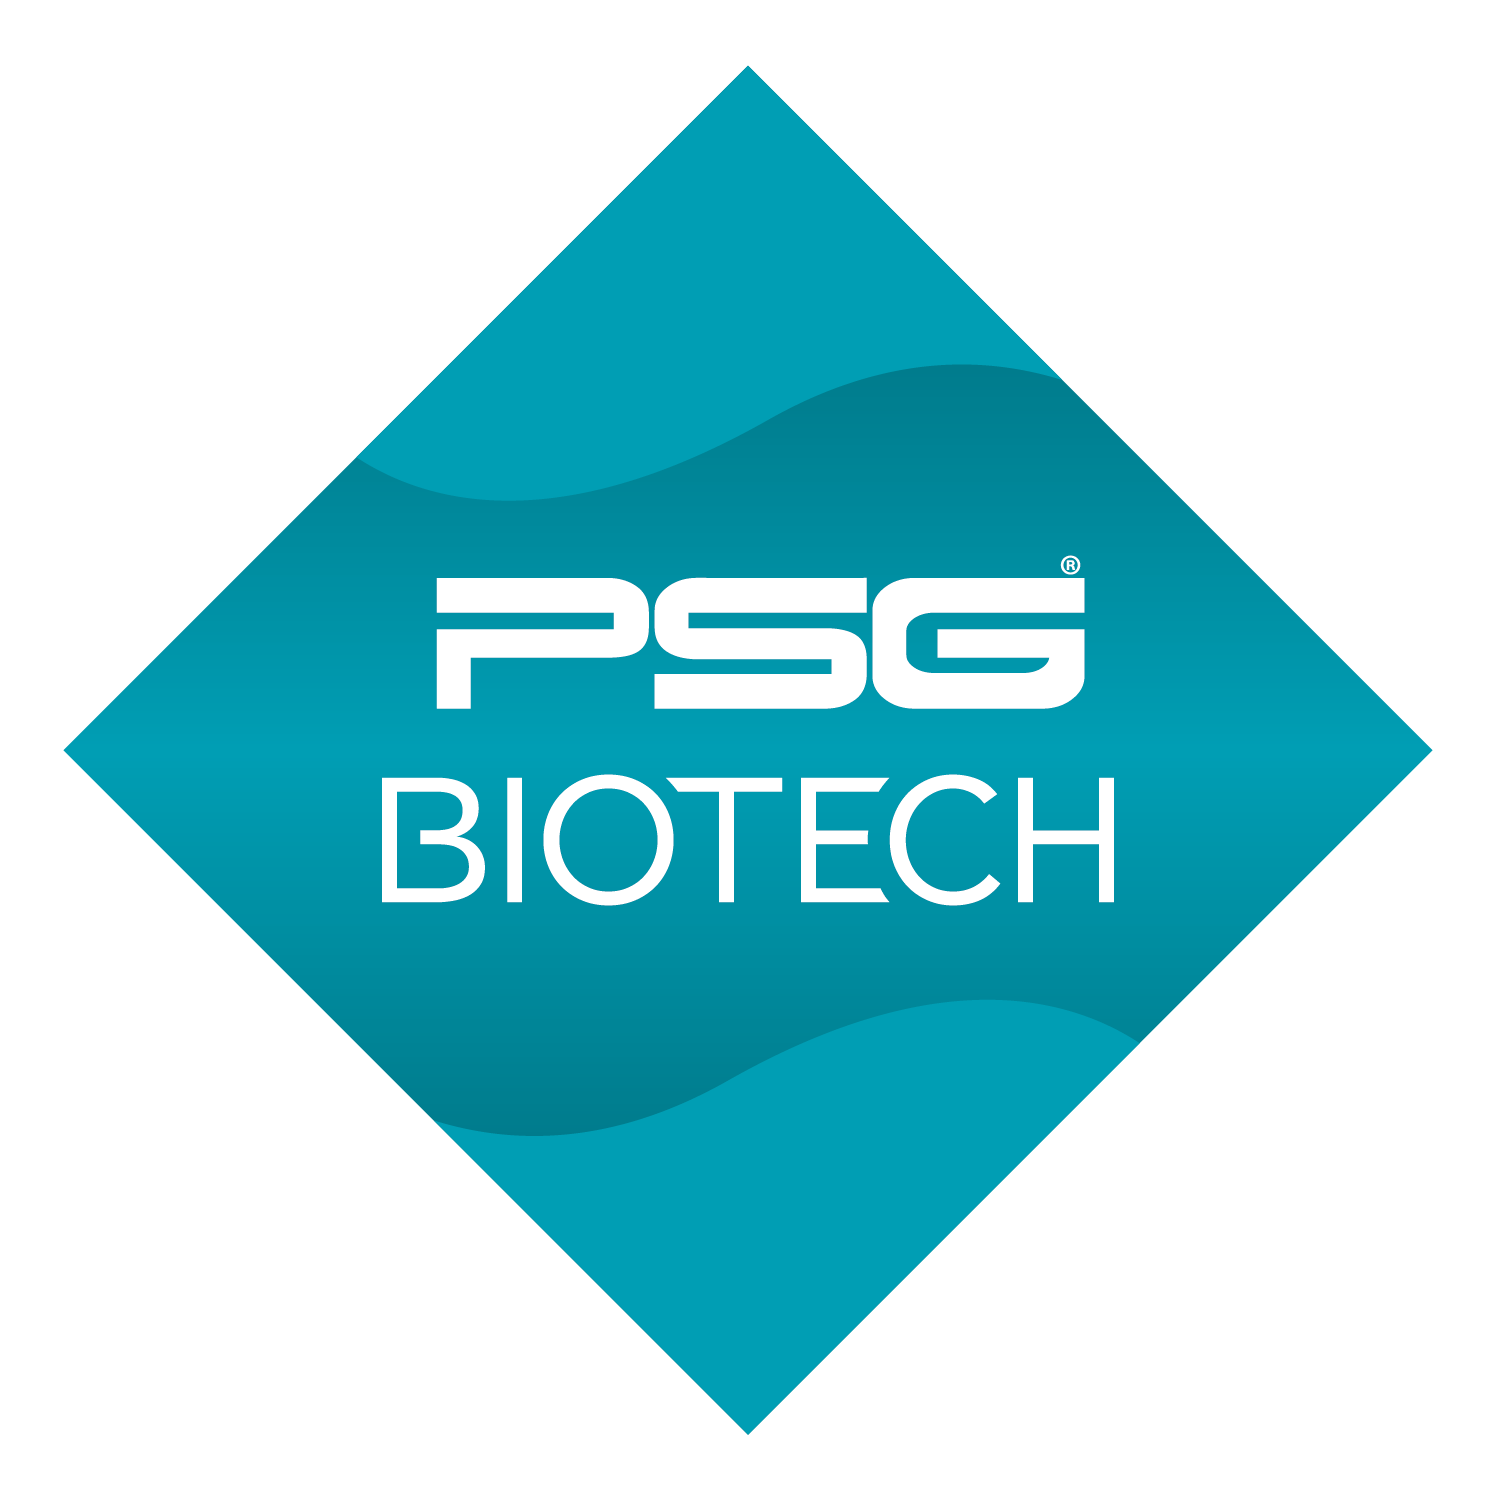 PSG Biotech